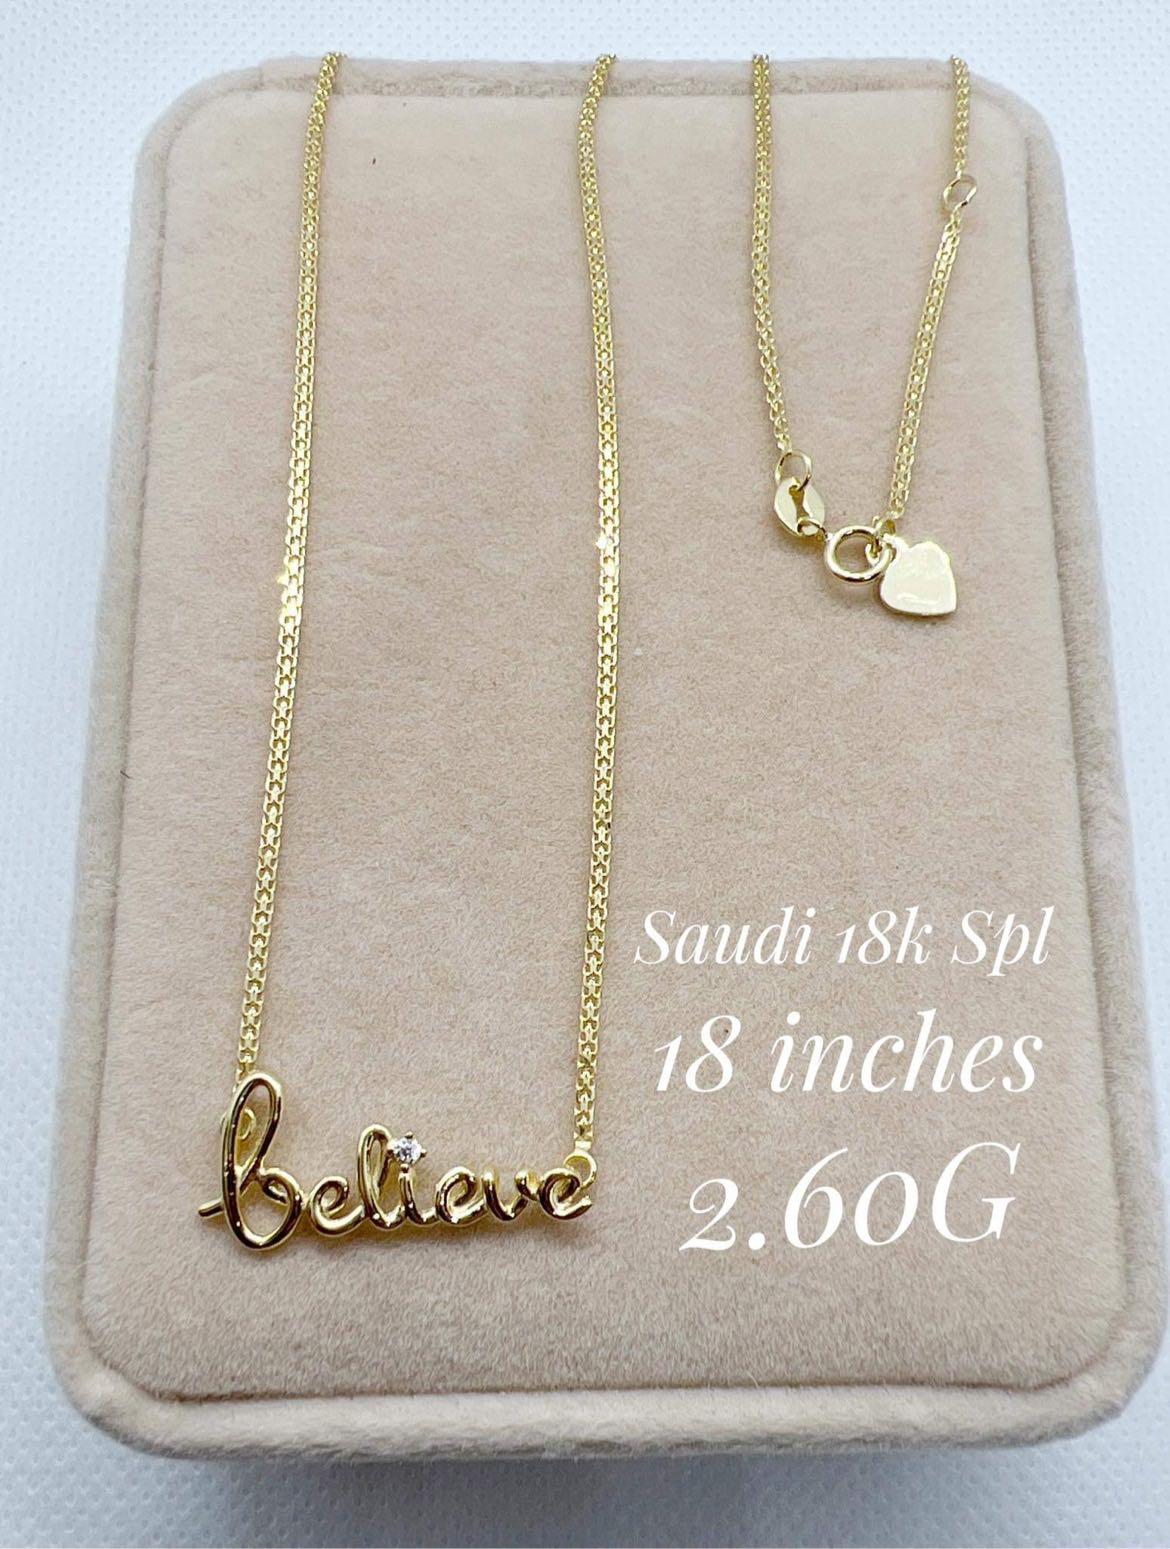 お気に入り】 Saudi Gold 18K/ AU750 - アクセサリー